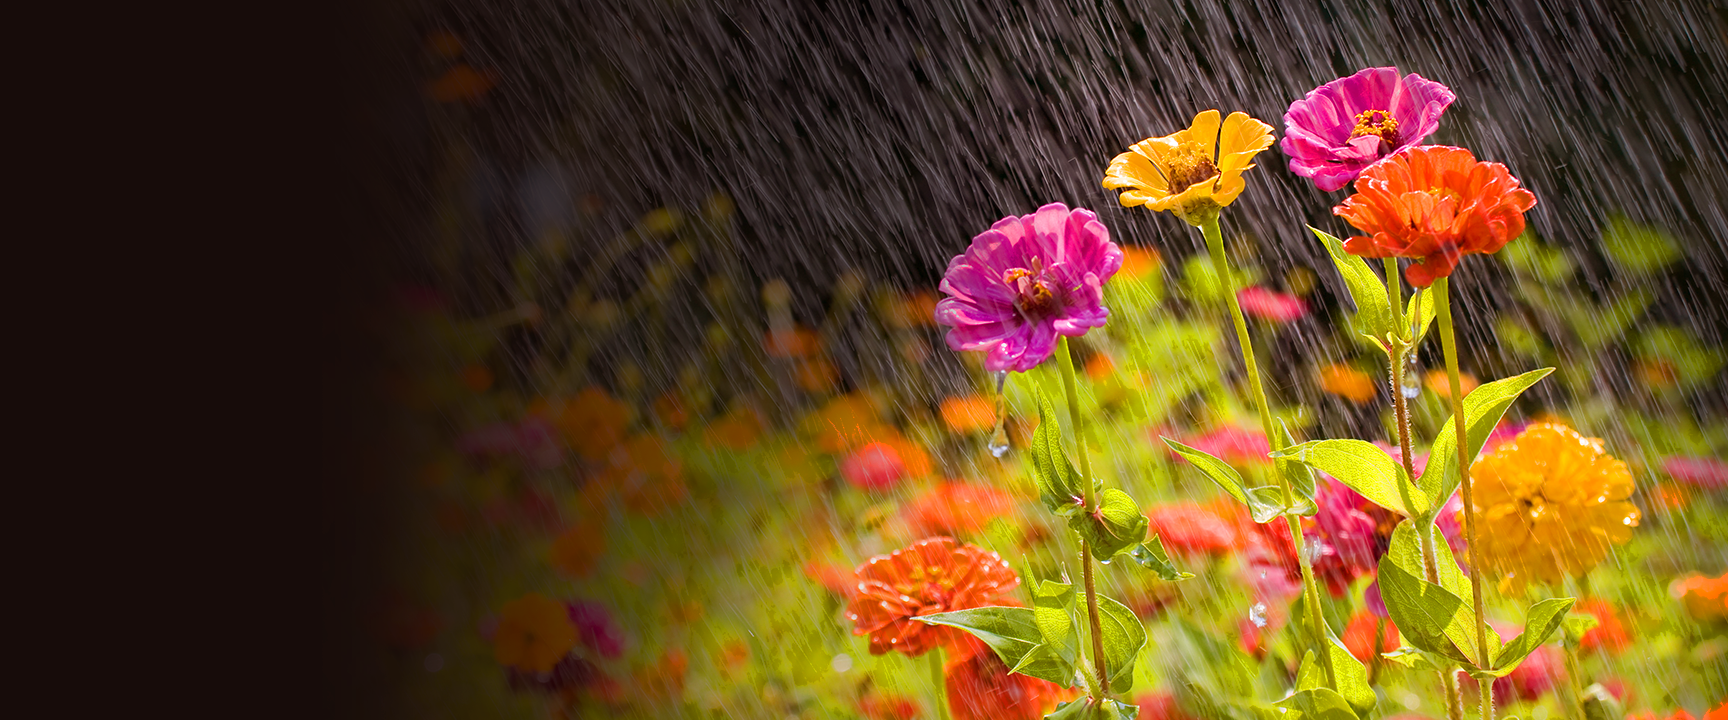 Lluvia en cascada sobre las flores del jardín.